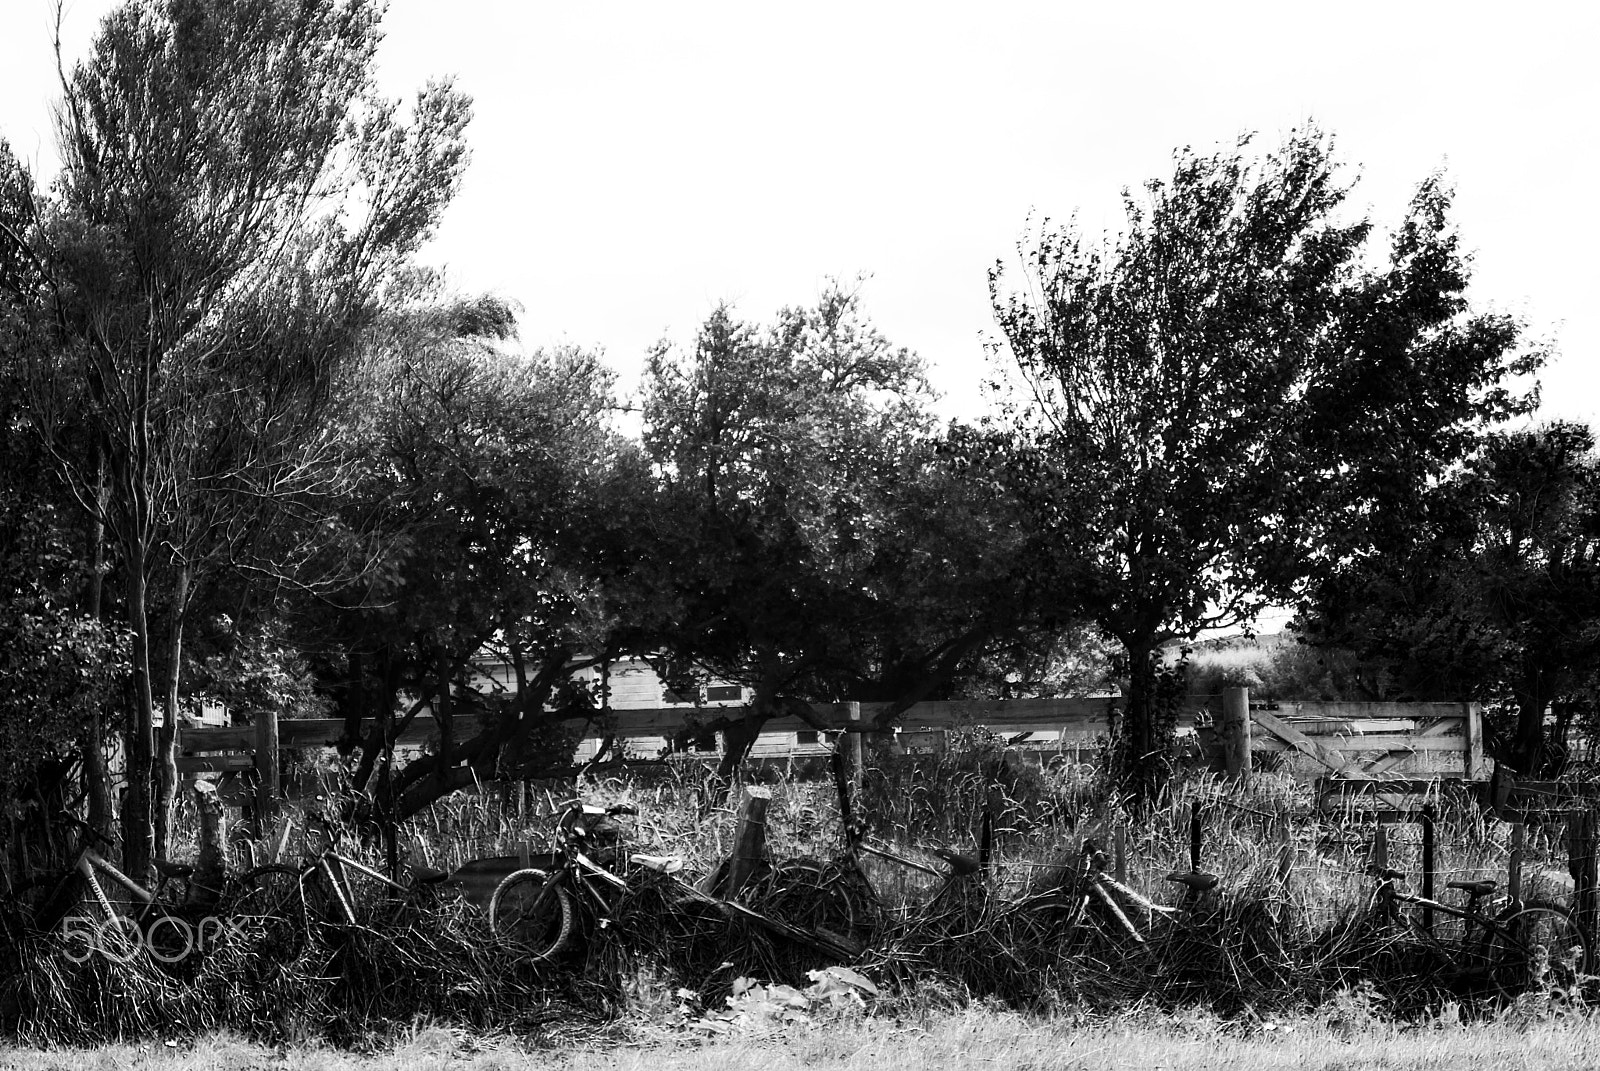 Pentax K10D sample photo. Bush bike park photography